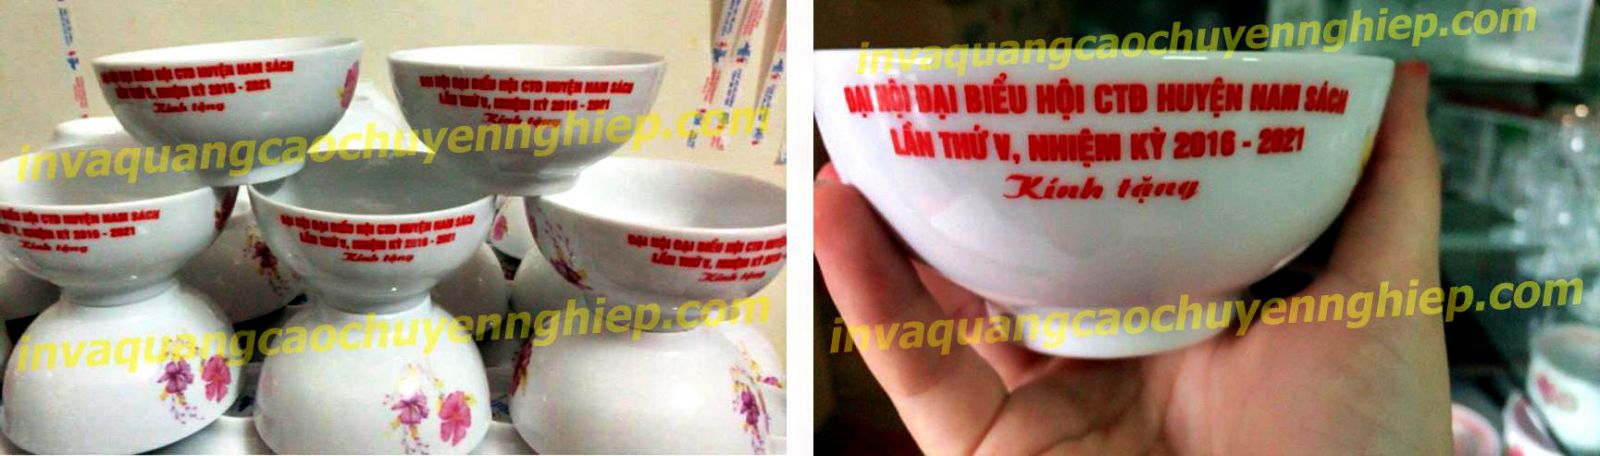 in logo trên bát đĩa sứ - chuyên cung cấp các sản phẩm ấm chén in logo giá rẻ nhất tại Hà Nội